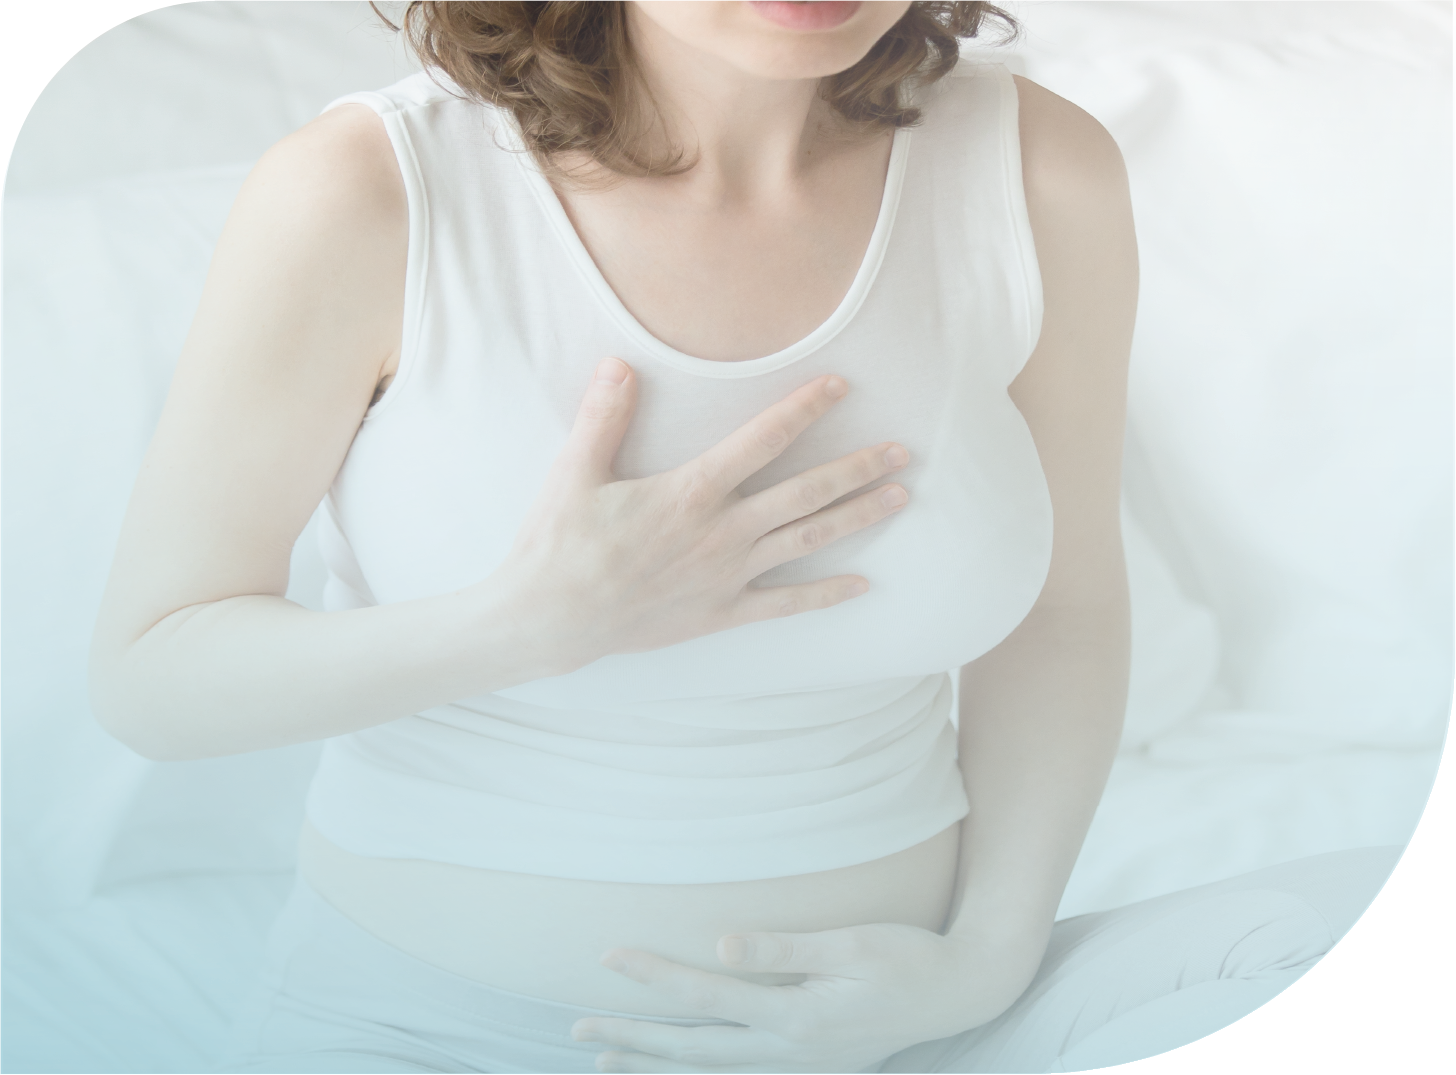 Manejo clínico de las náuseas y vómitos en el embarazo